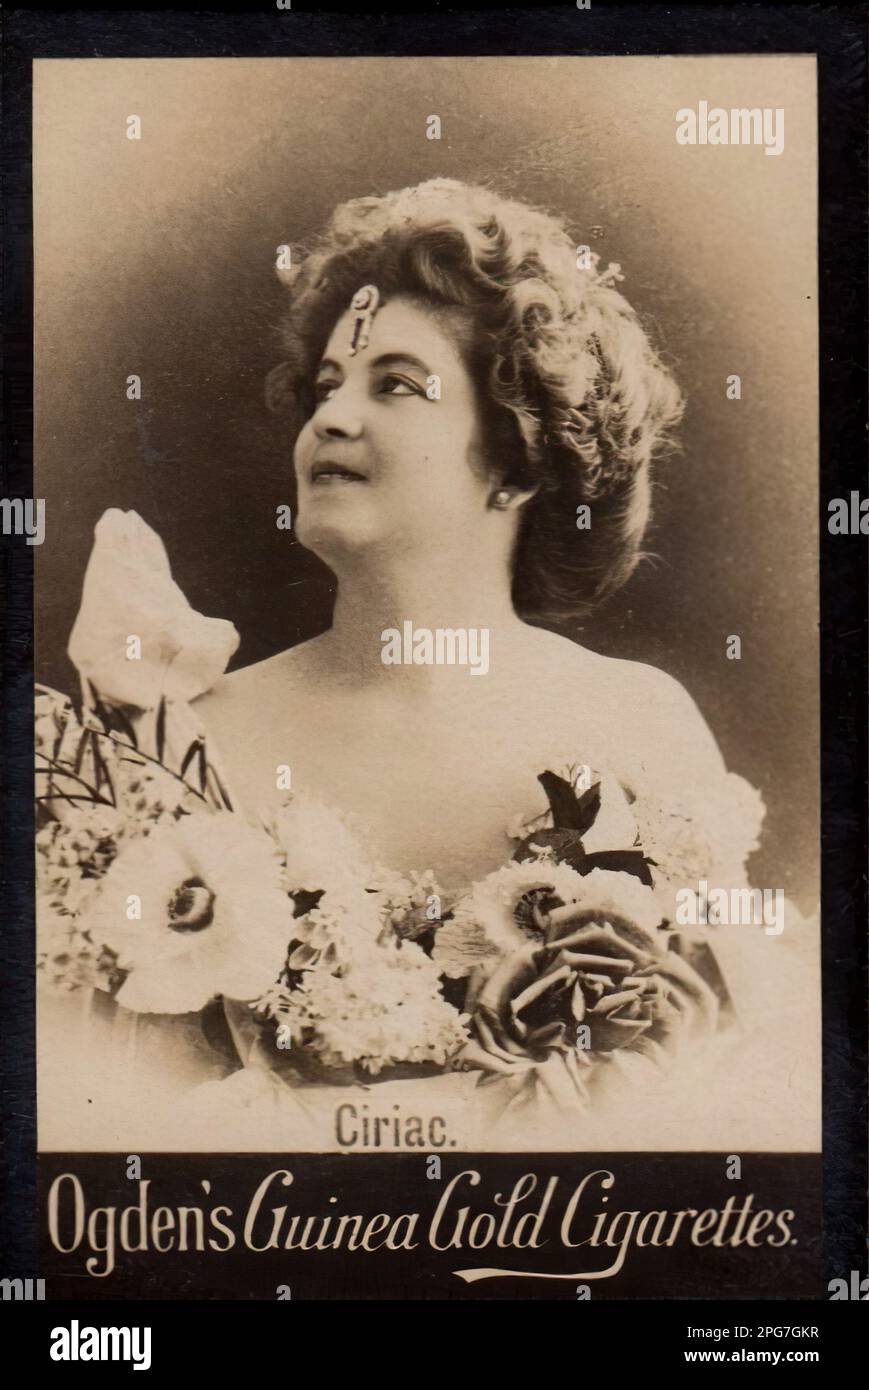 Porträt der Schauspielerin Ciriac - Vintage Cigarette Card, Viktorianisches Zeitalter Stockfoto